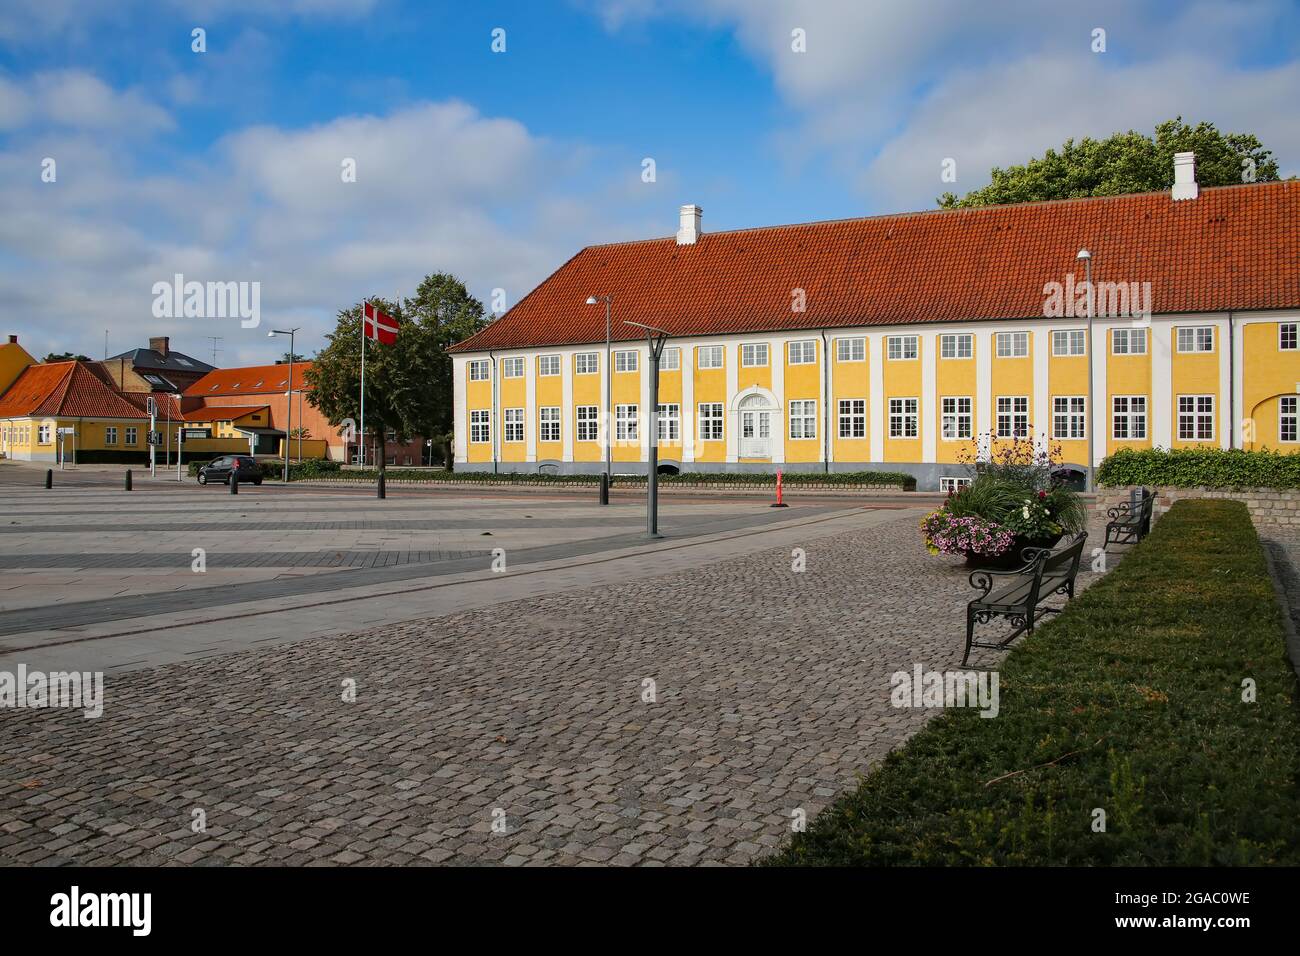 Il Monastero di Kaalund (Kaalund Kloster o Kalundborg Slots Ladegård) si trova nel comune di Kalundborg, in Danimarca. Edificio storico giallo e bianco. Foto Stock